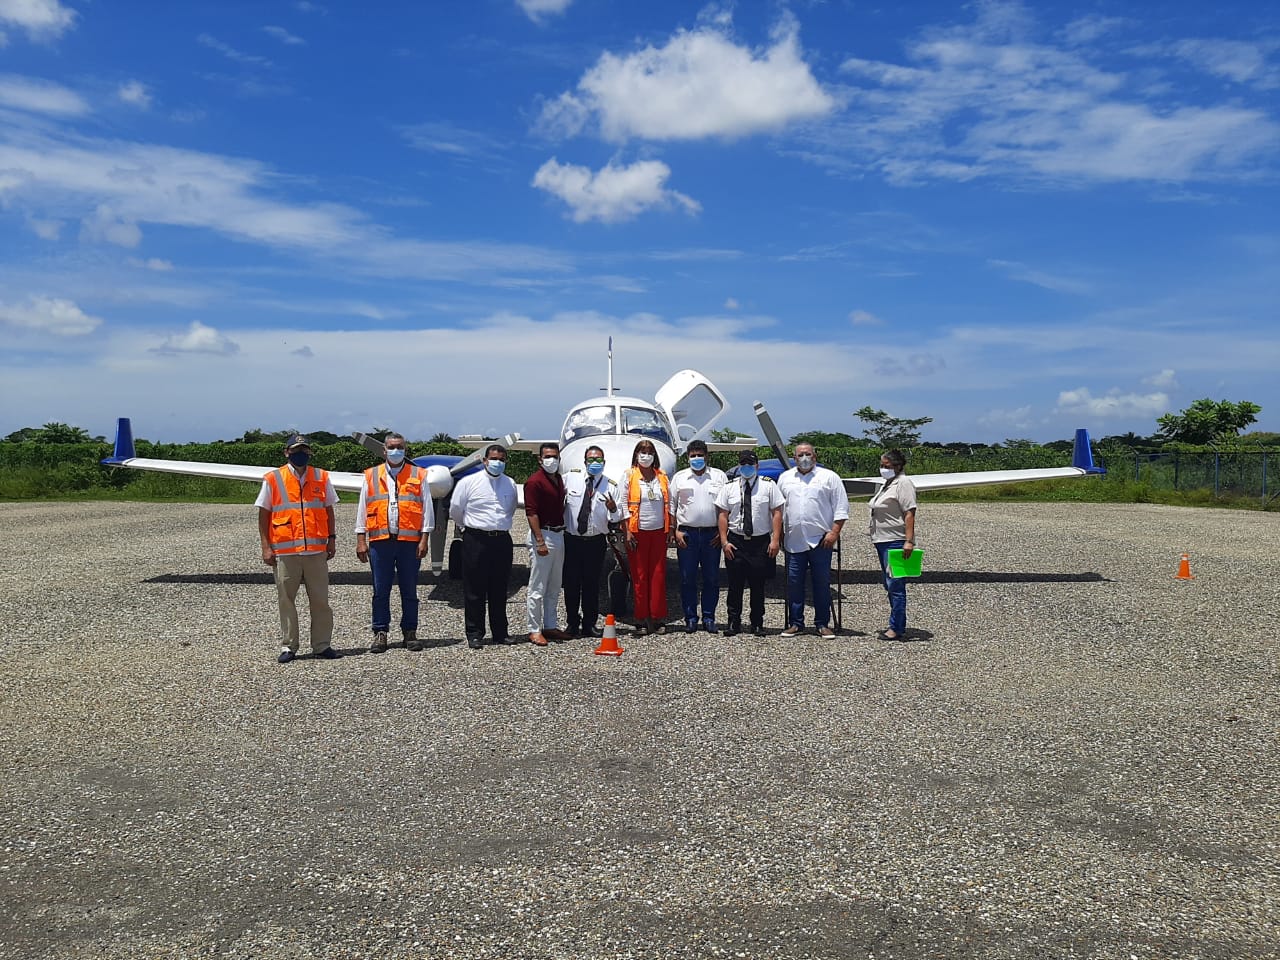 Noticia: Se inicia la operación aérea comercial y regular en aeropuerto de San Bernardo de Mompox